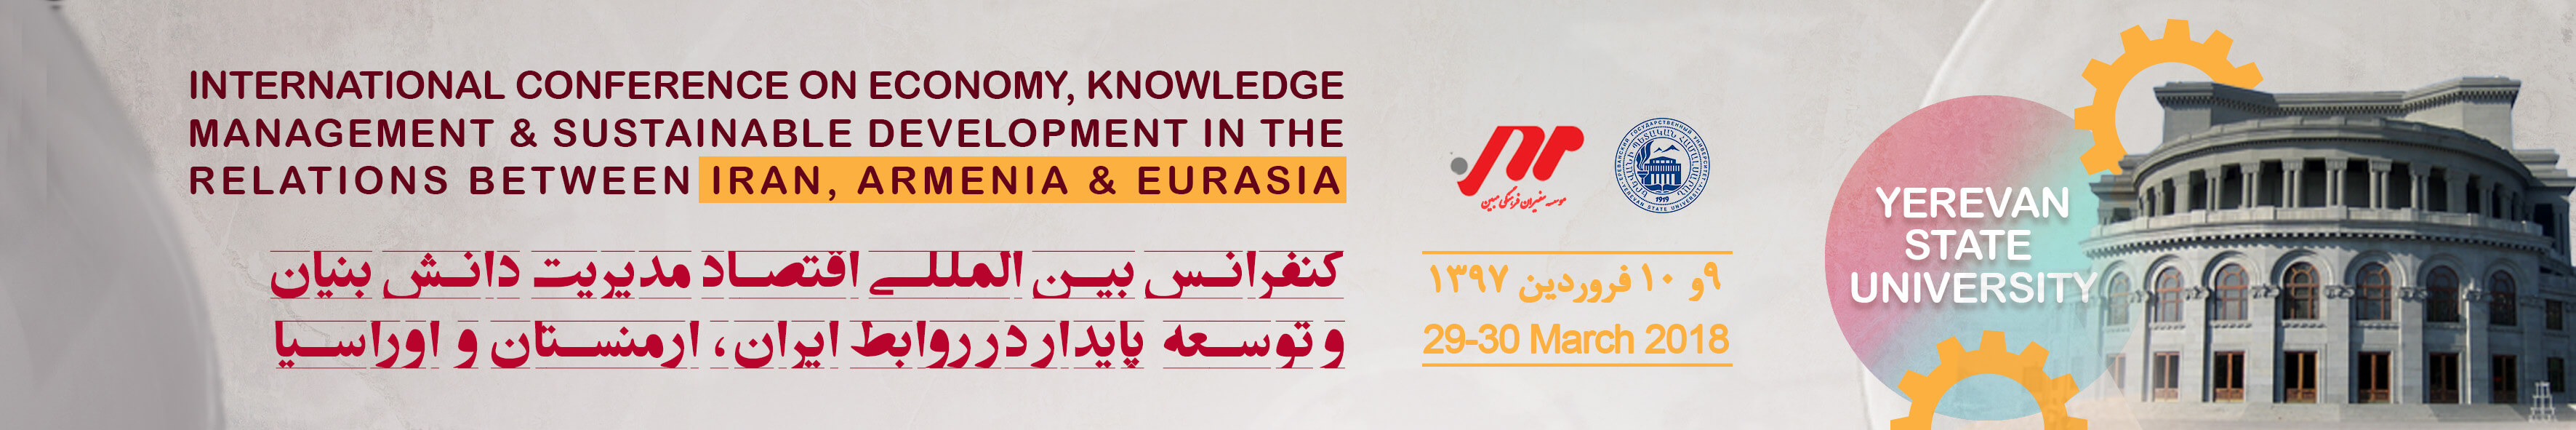 کنفرانس بین المللی اقتصاد، مدیریت دانش بنیان و توسعه پایدار در روابط ایران، ارمنستان و اوراسیا